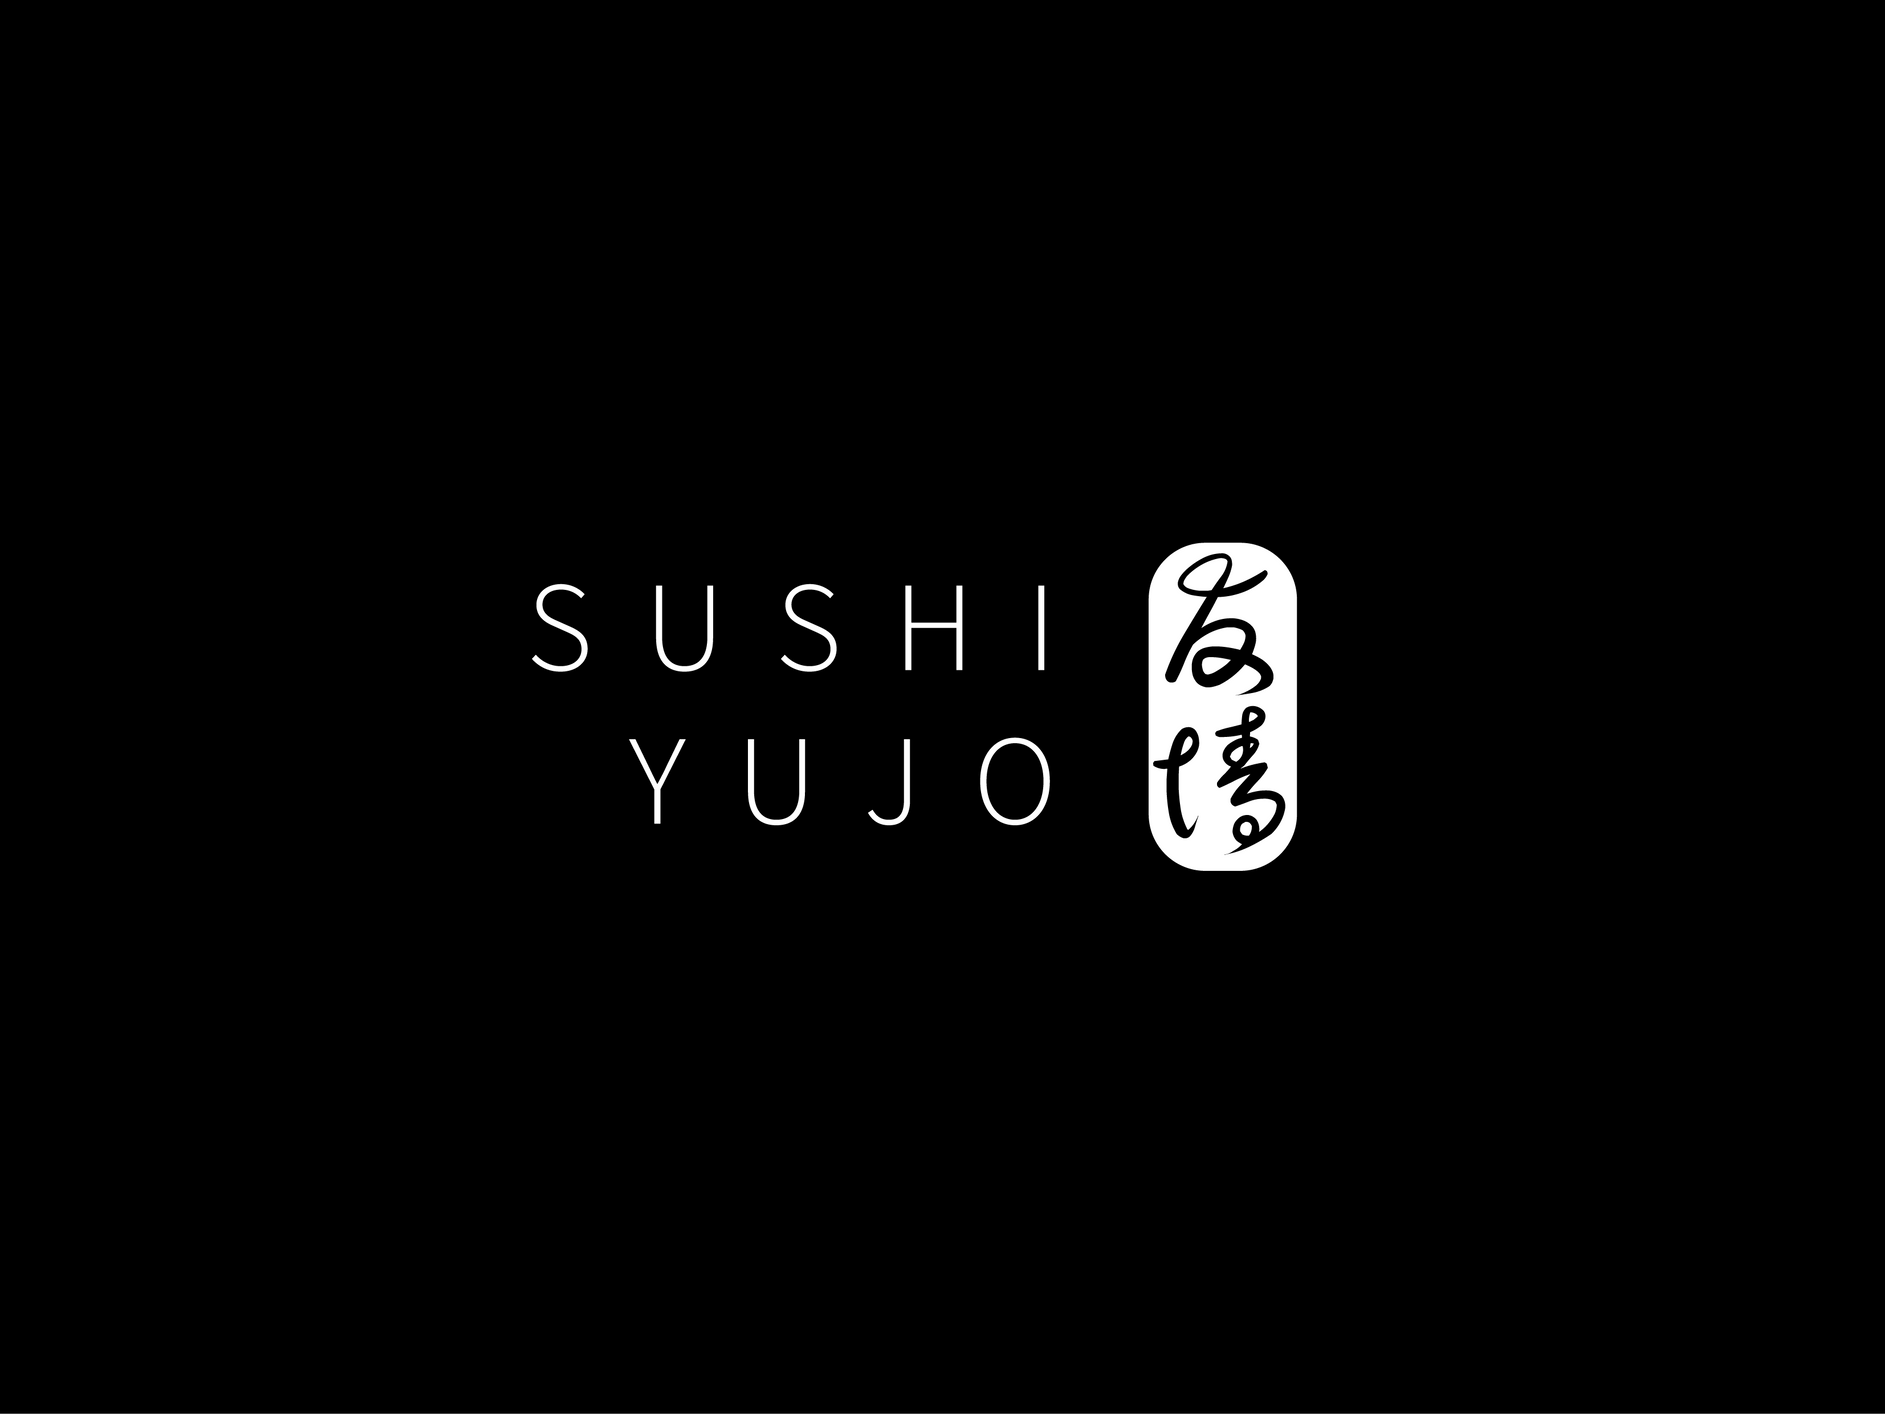 Sushi Yujo